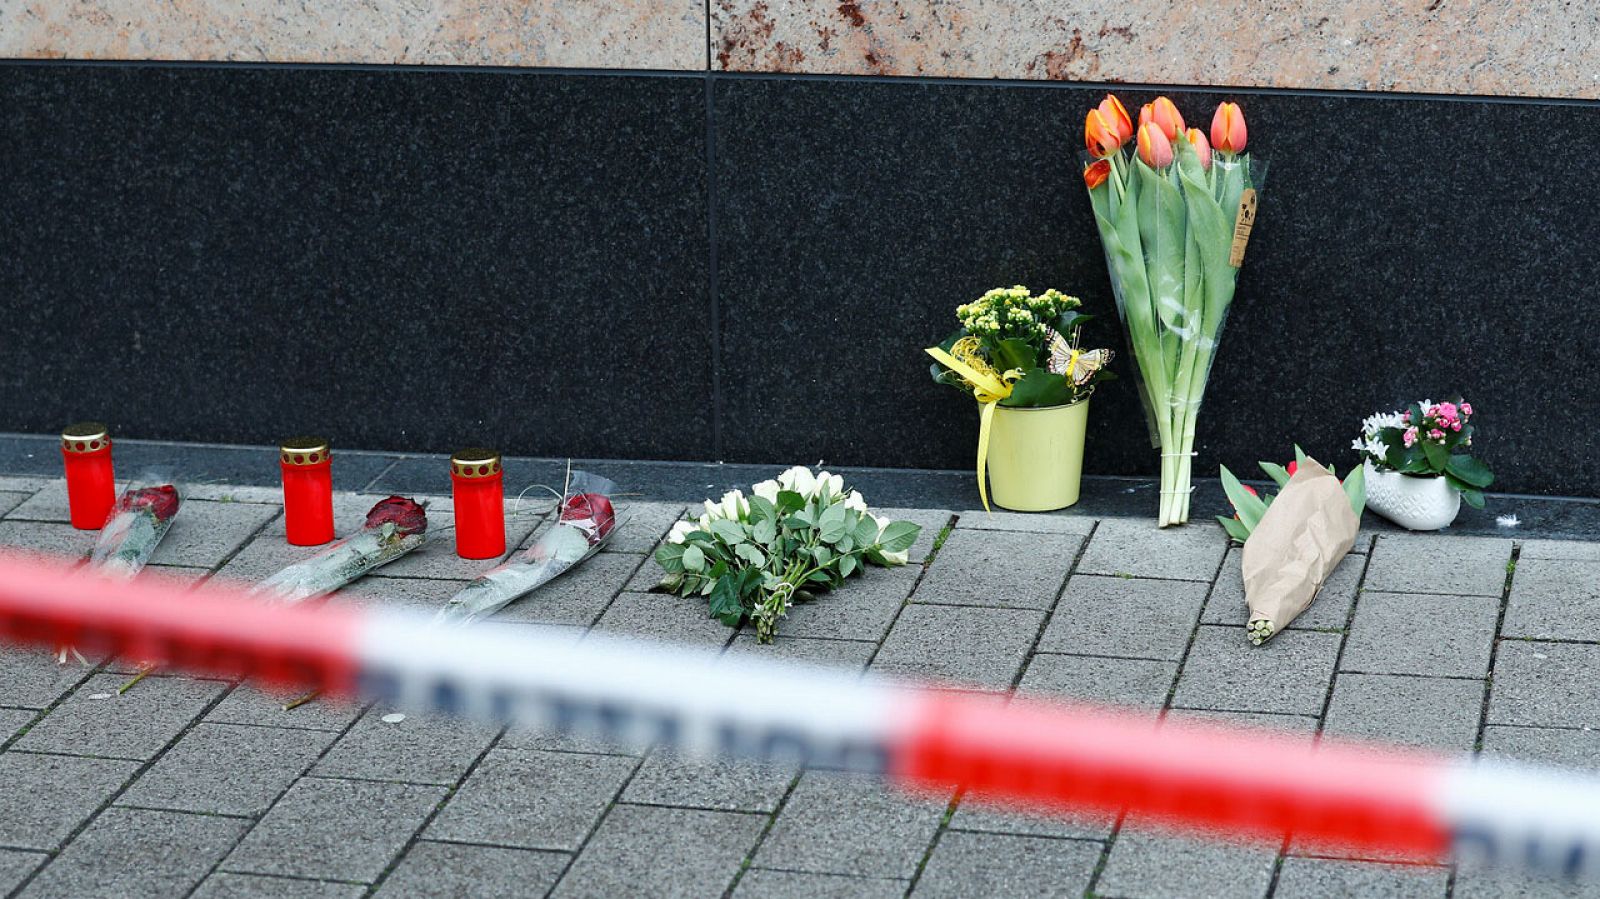 Dos ataques xenófobos dejan once muertos en la ciudad alemana de Hanau  - RTVE.es